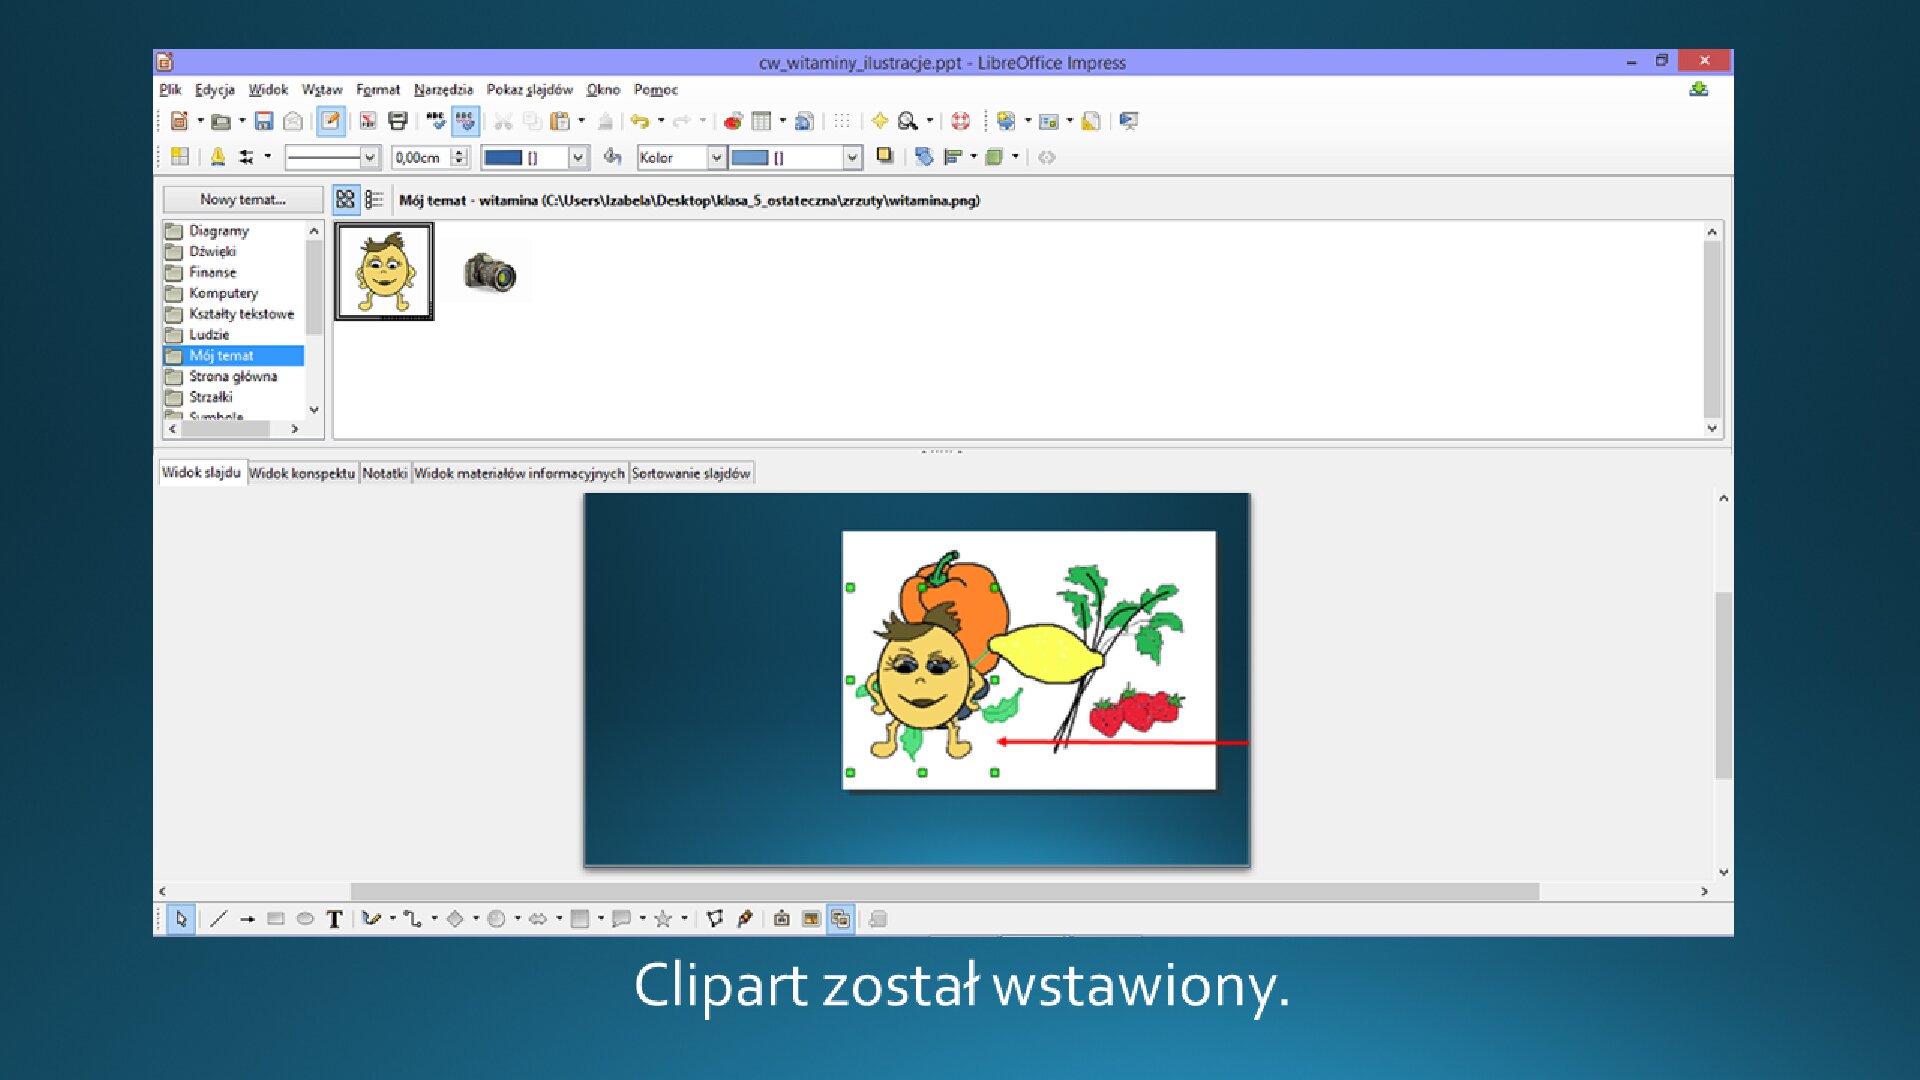 Slajd 4 galerii zrzutów slajdów: Wstawianie clipartu na slajd o pustym układzie w programie LibreOffice Impress